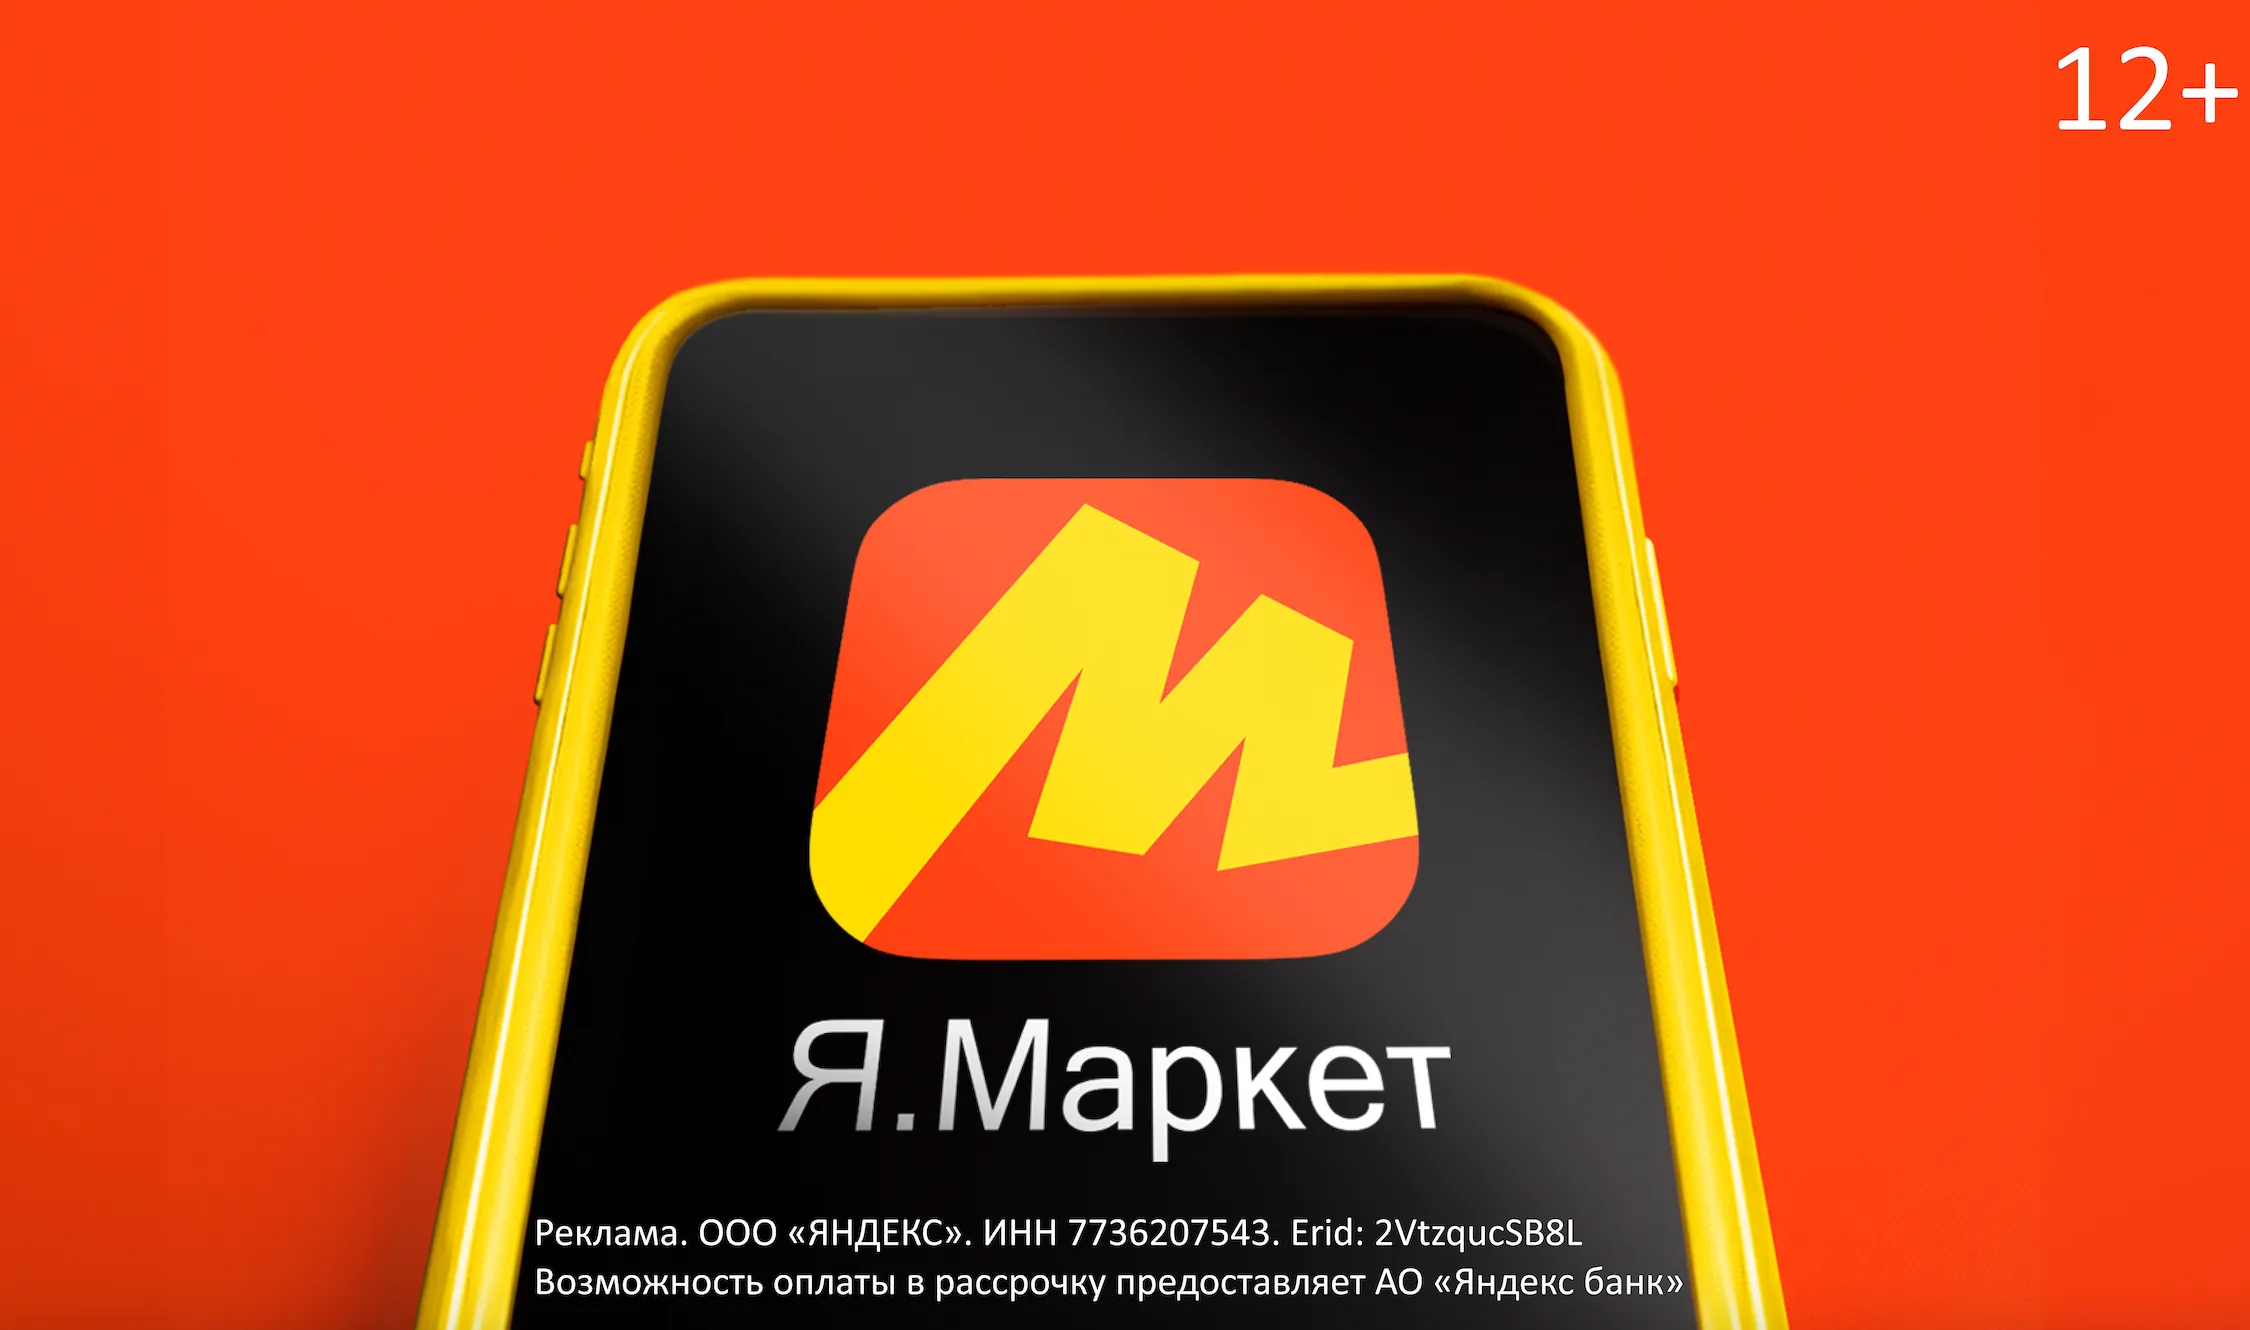 Стиль, логотип и главная страница: Яндекс Маркет объявил о масштабном обновлении